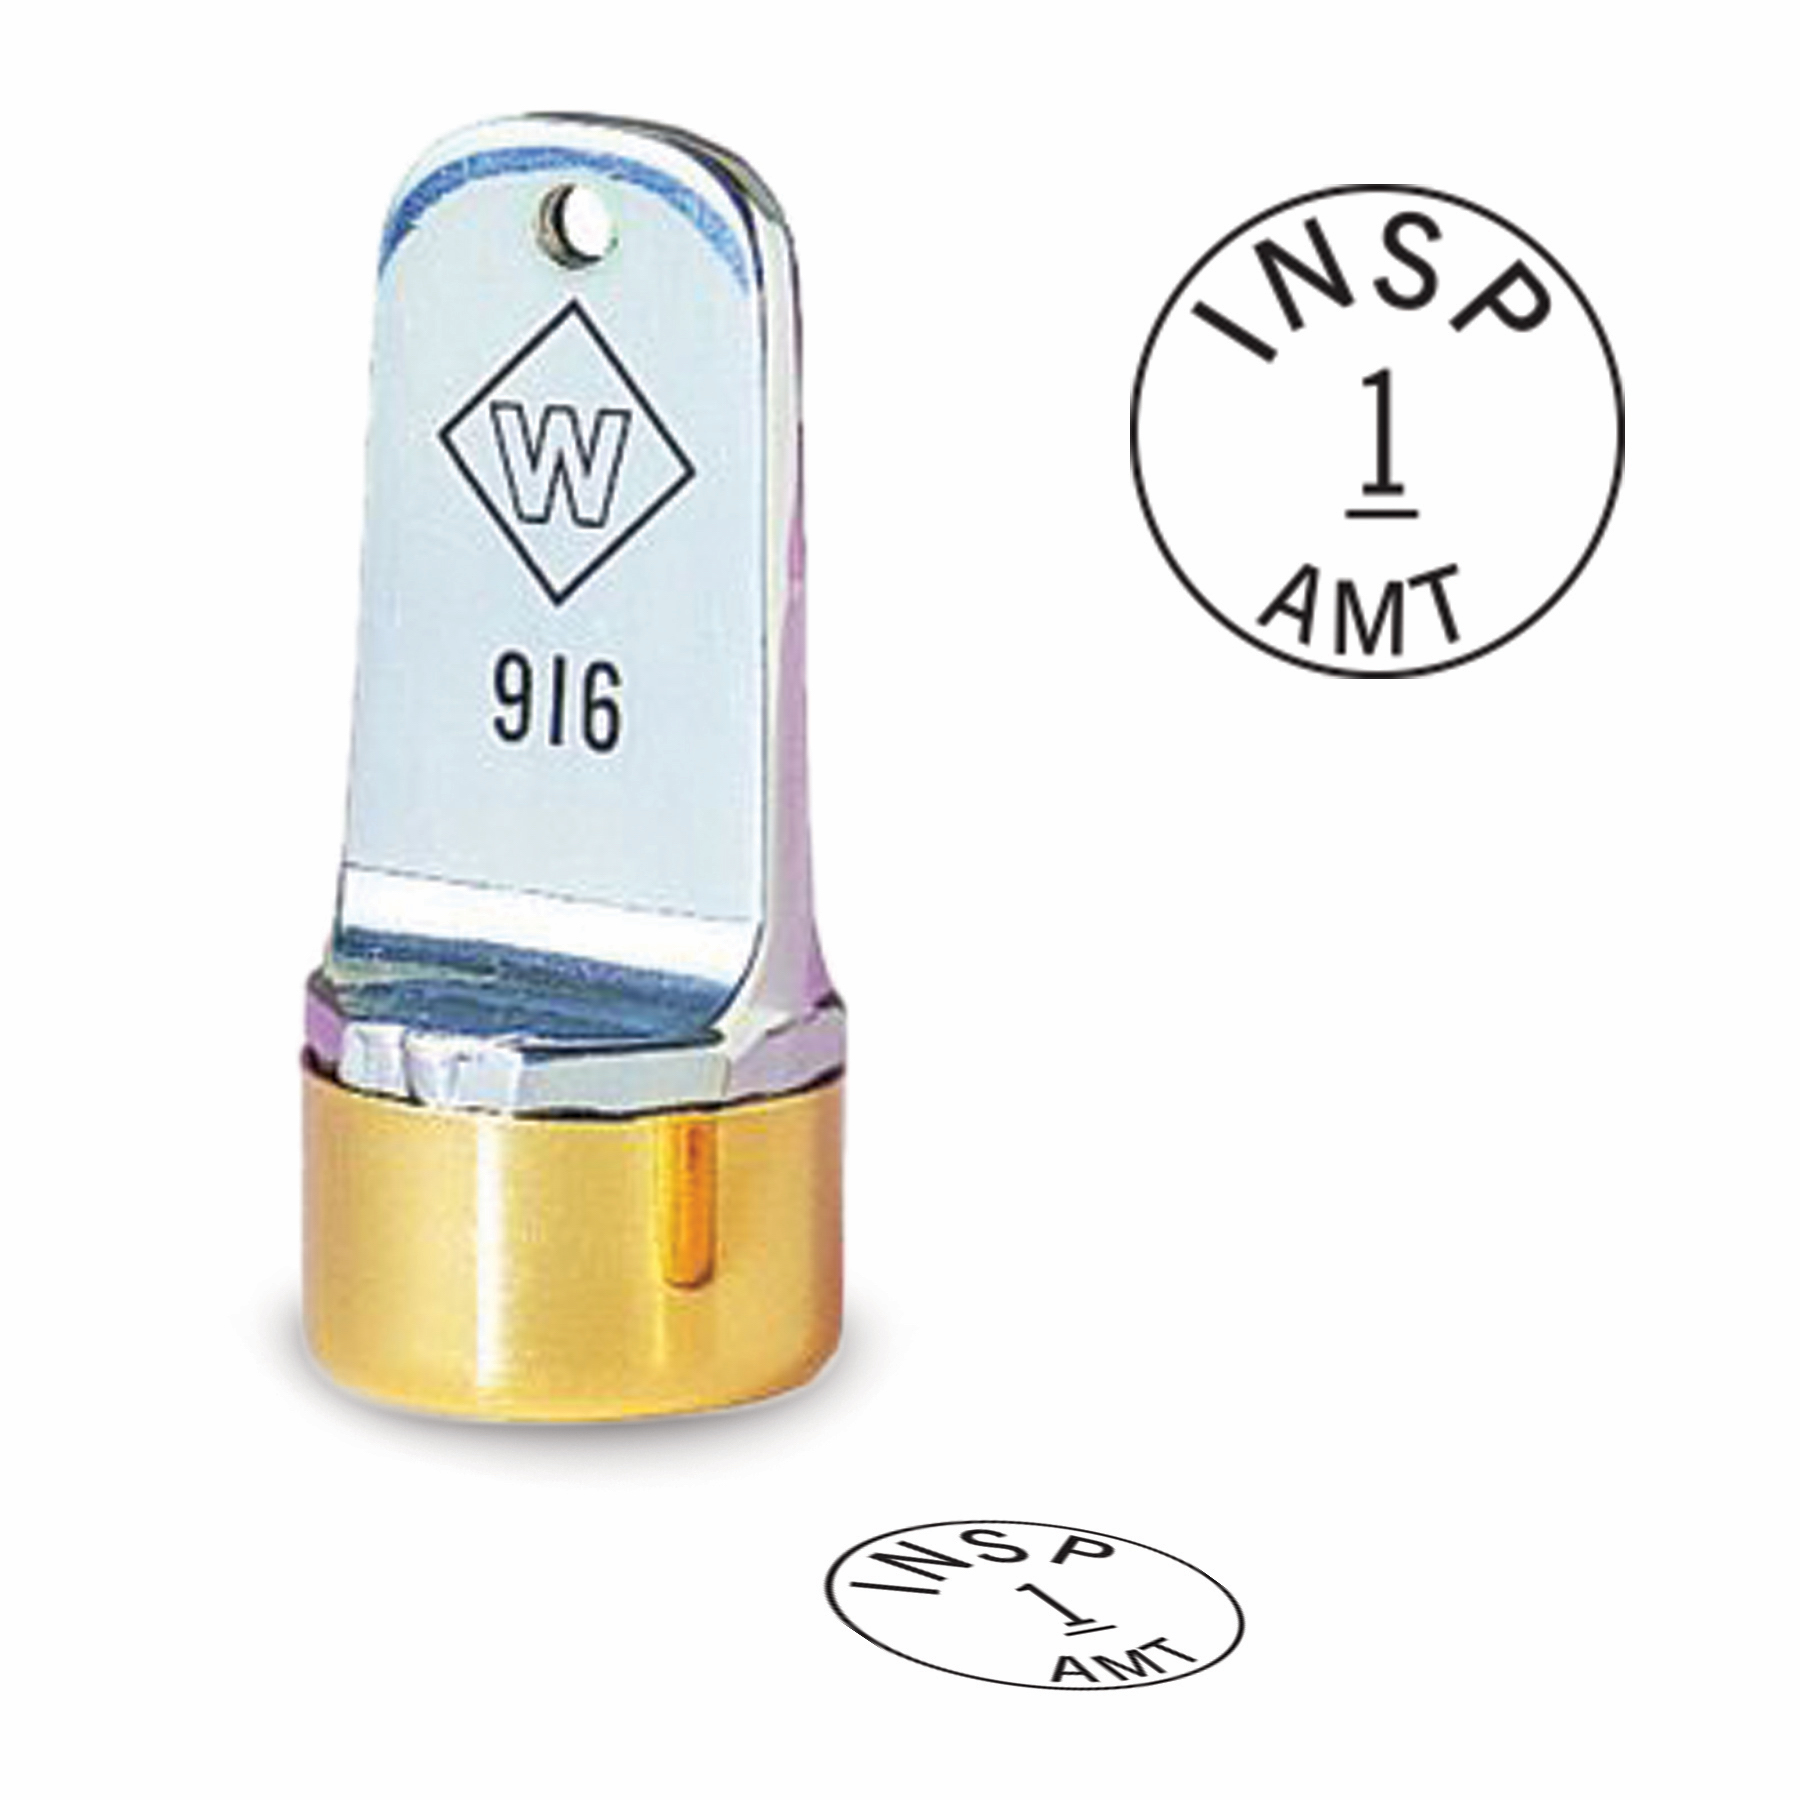 Buy 5/8 Diameter Custom Metal Inspection Stamp at Winmark